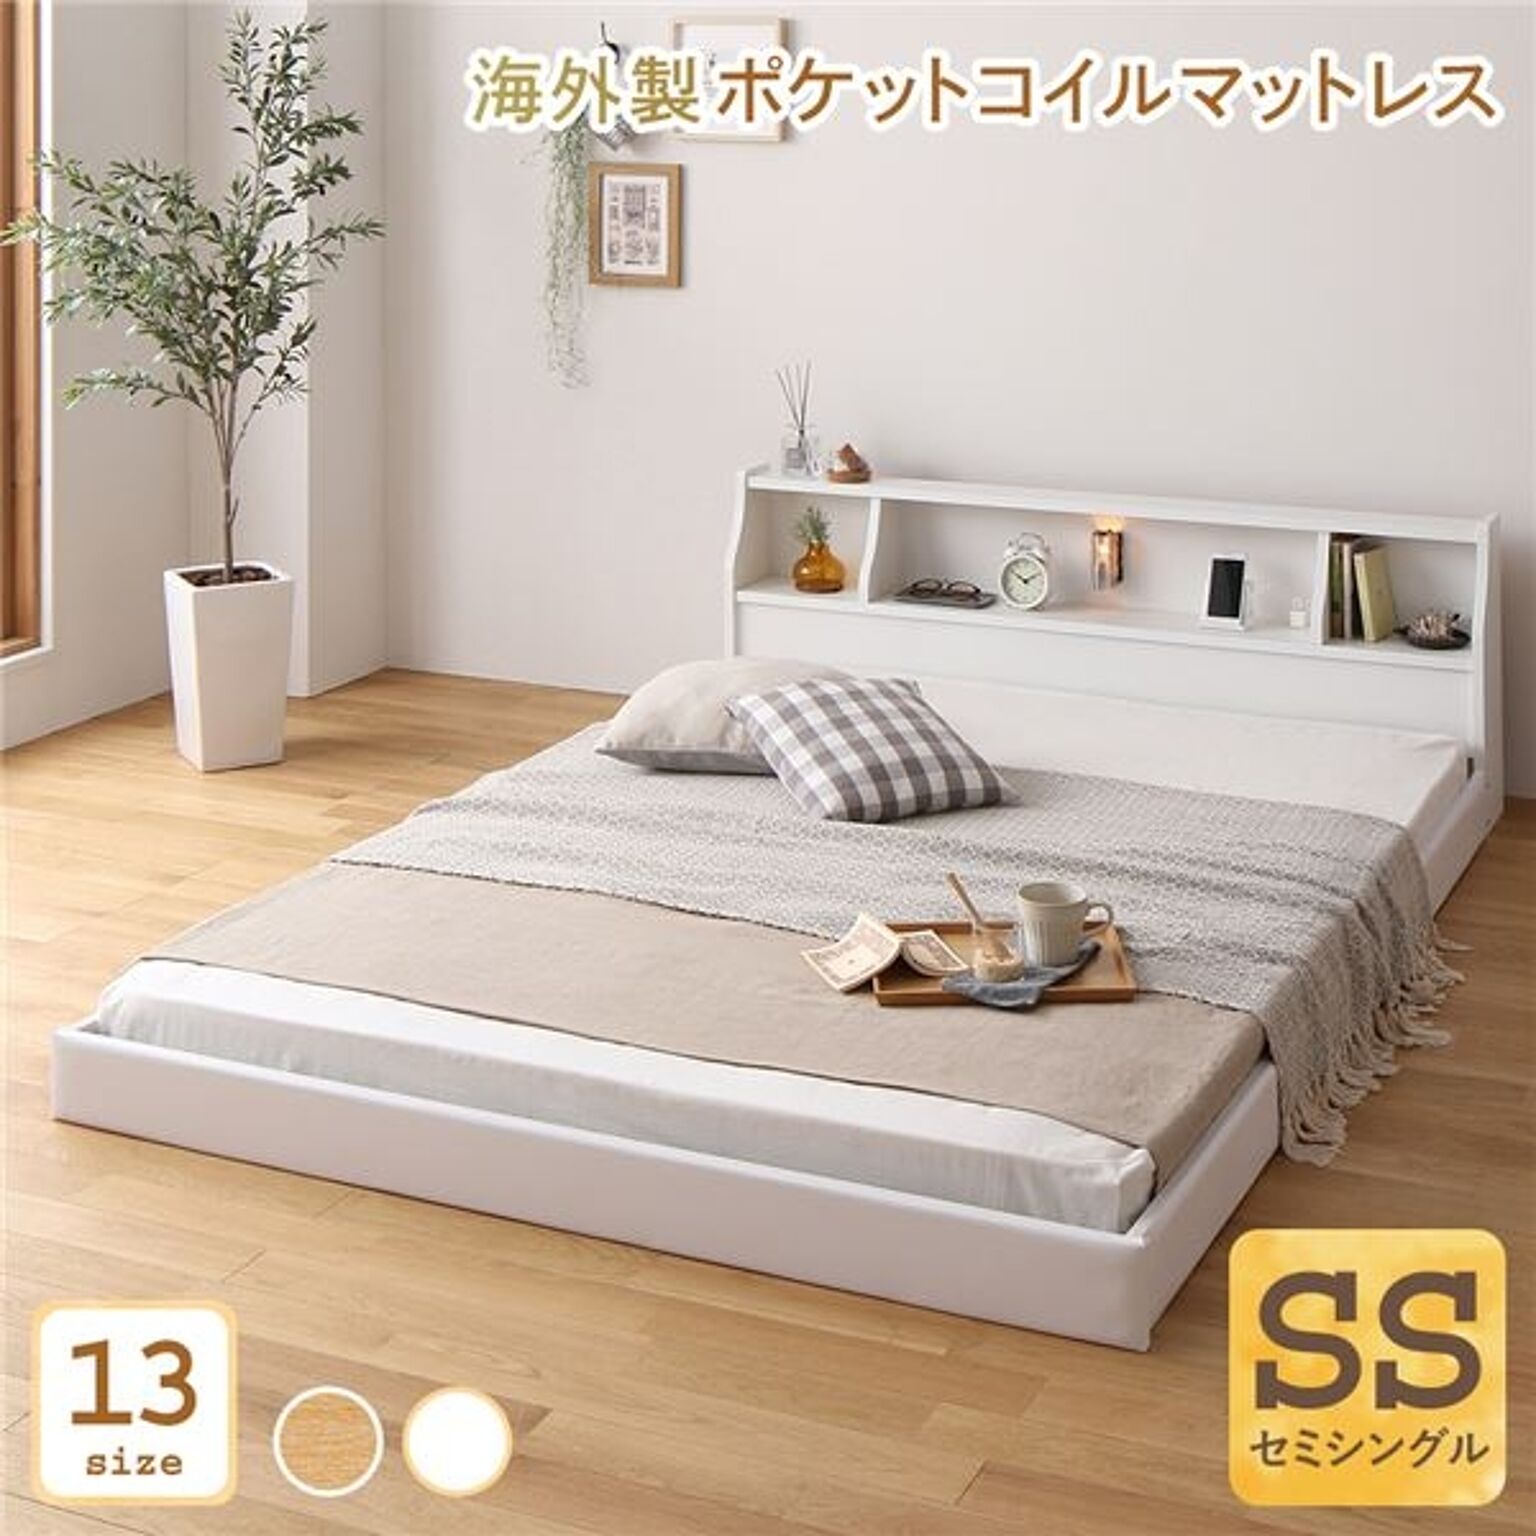 日本製 ベッド 低床 連結 ロータイプ 照明 棚付き コンセント ホワイト